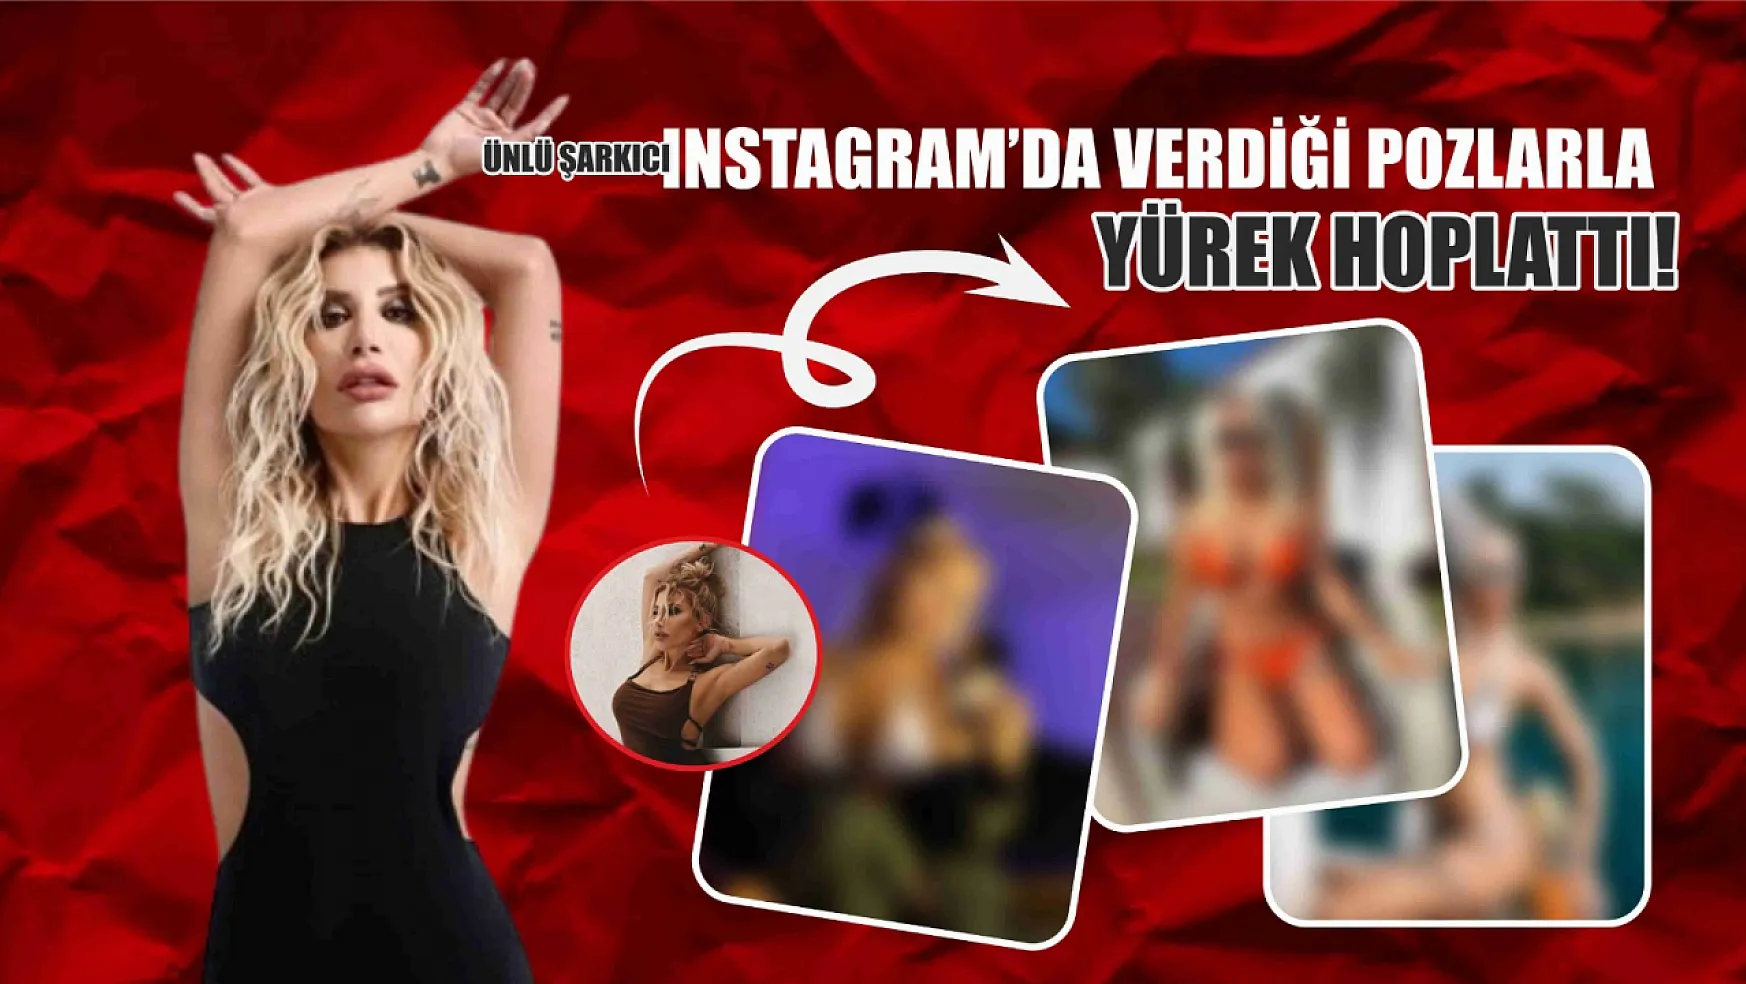 Ünlü şarkıcı Instagram'da verdiği pozlarla yürek hoplattı!